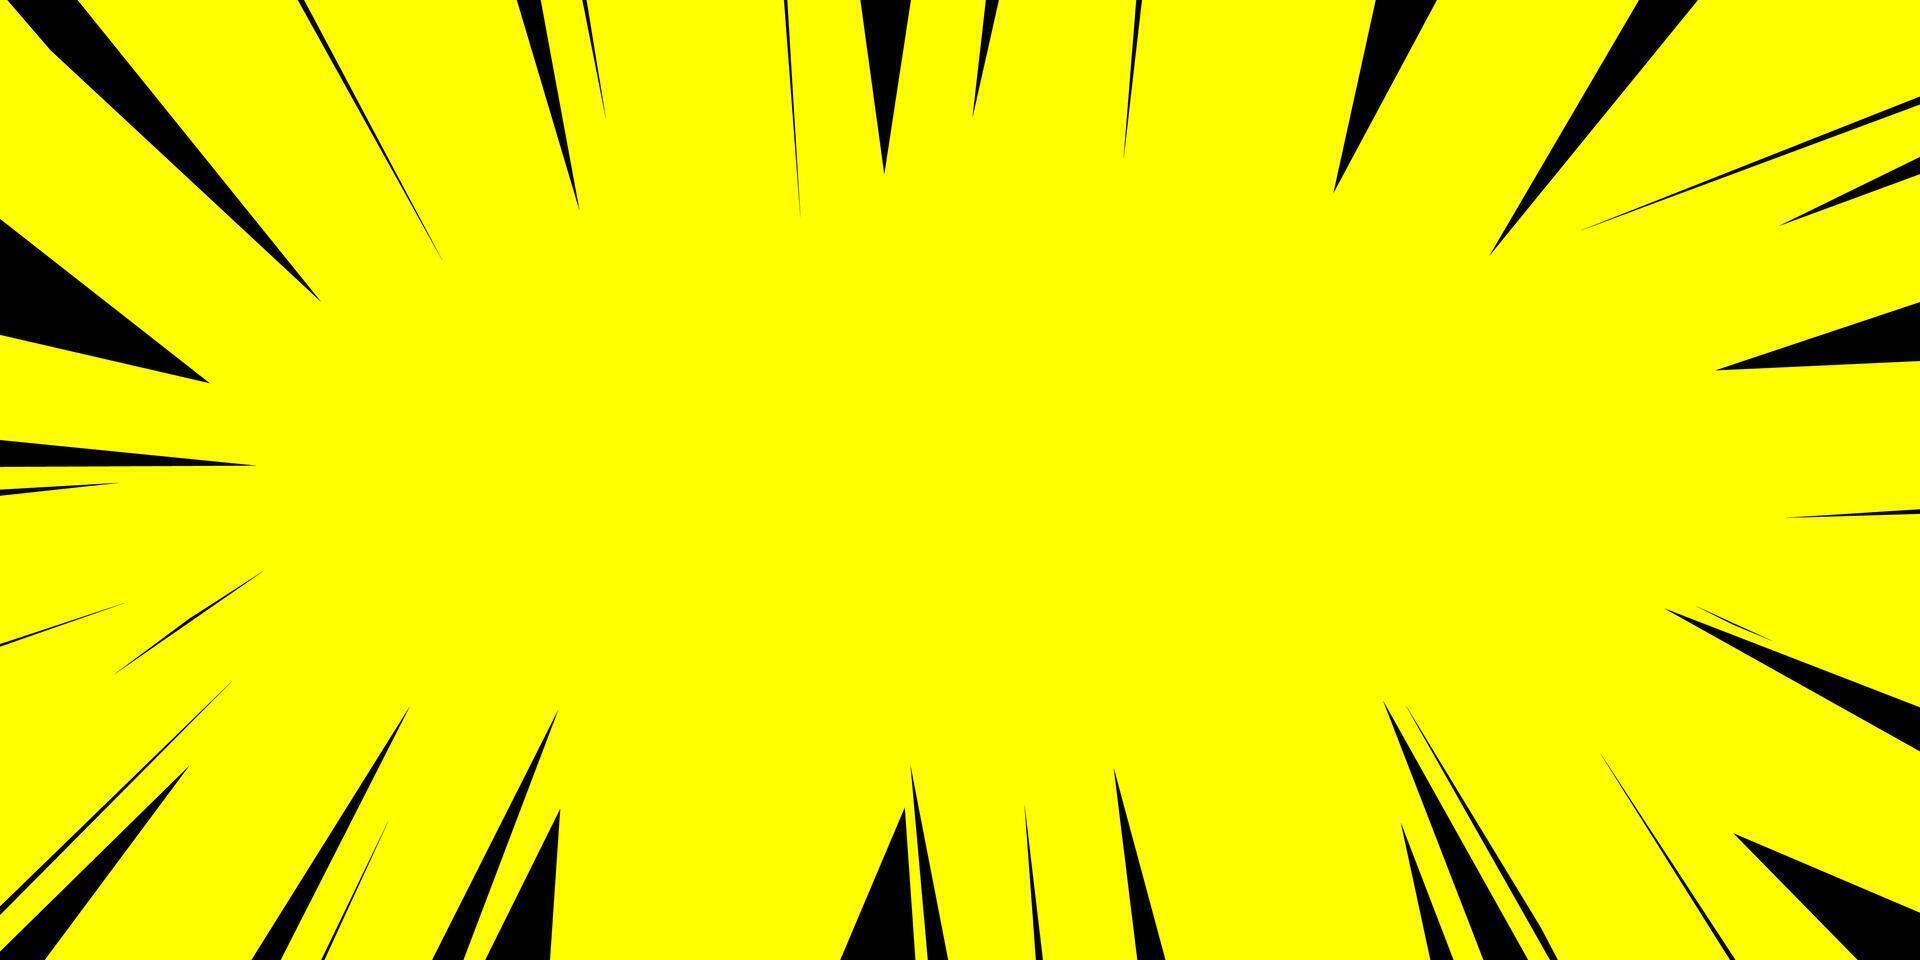 komisk bok bakgrund med gul och svart vektor